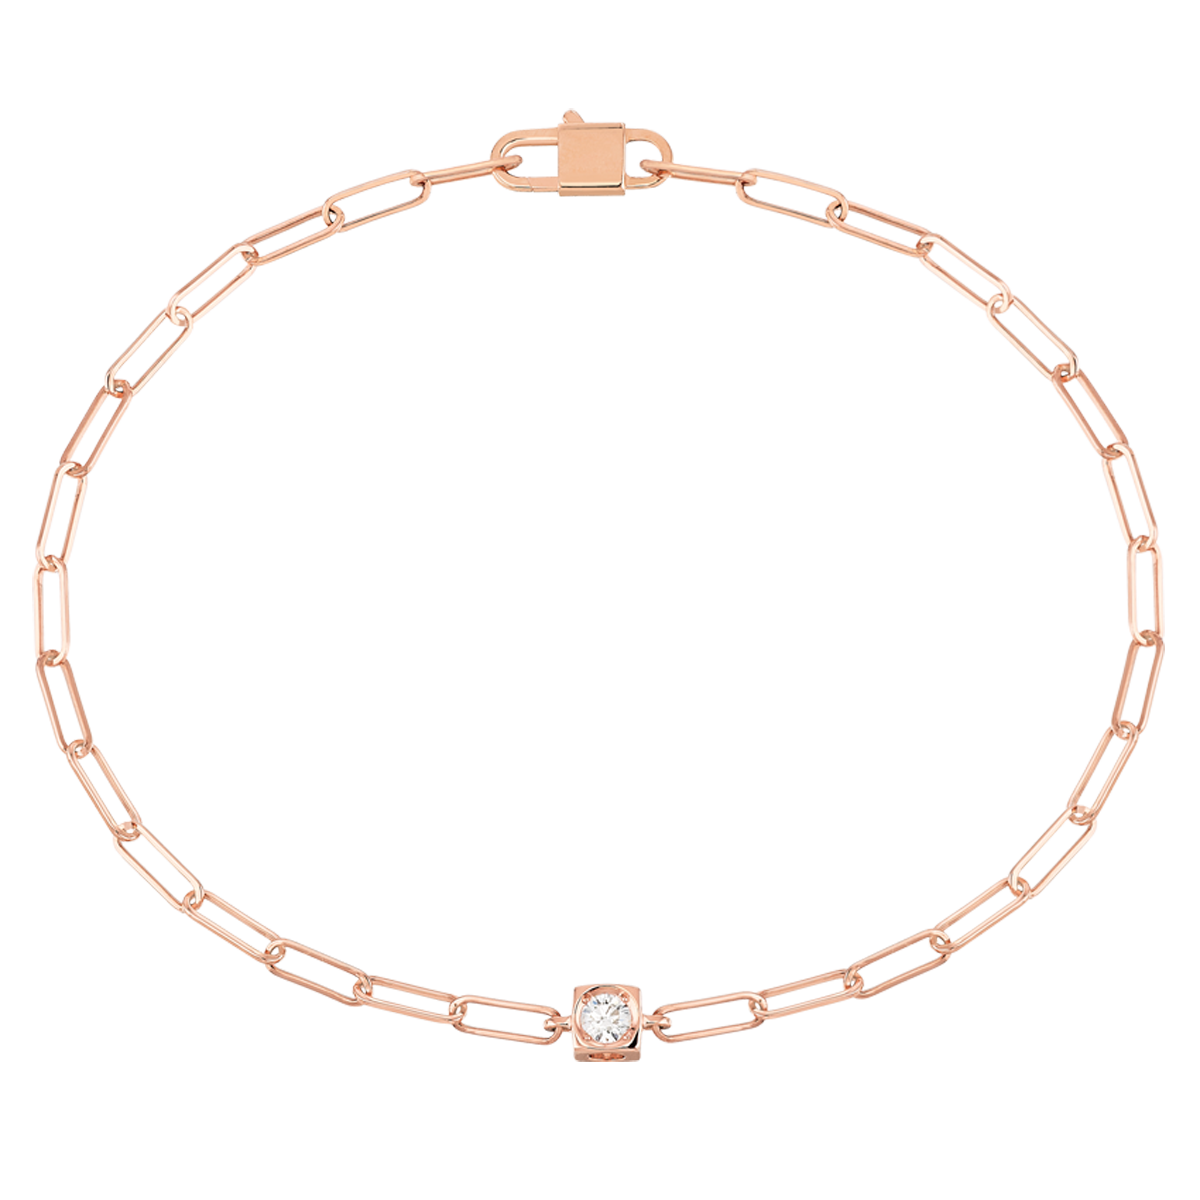 Bracelet Diamant sur cordon de couleur - Bijouterie Mohedano